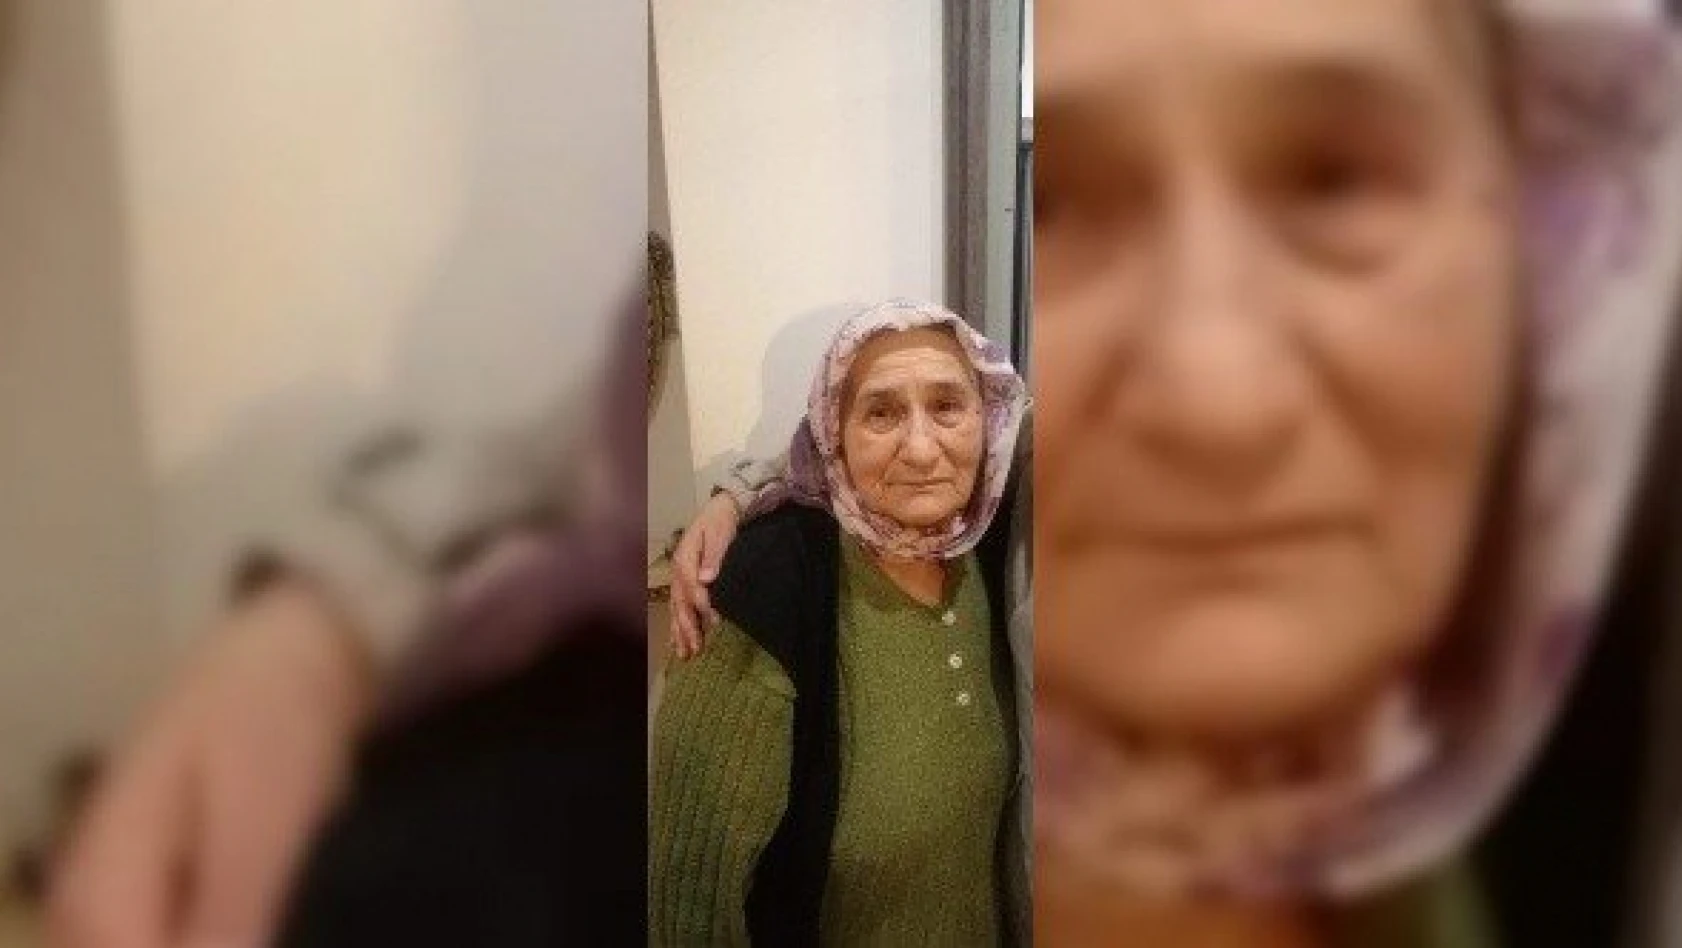 Kaybolan yaşlı kadını arama çalışmaları 11. gününde devam ediyor